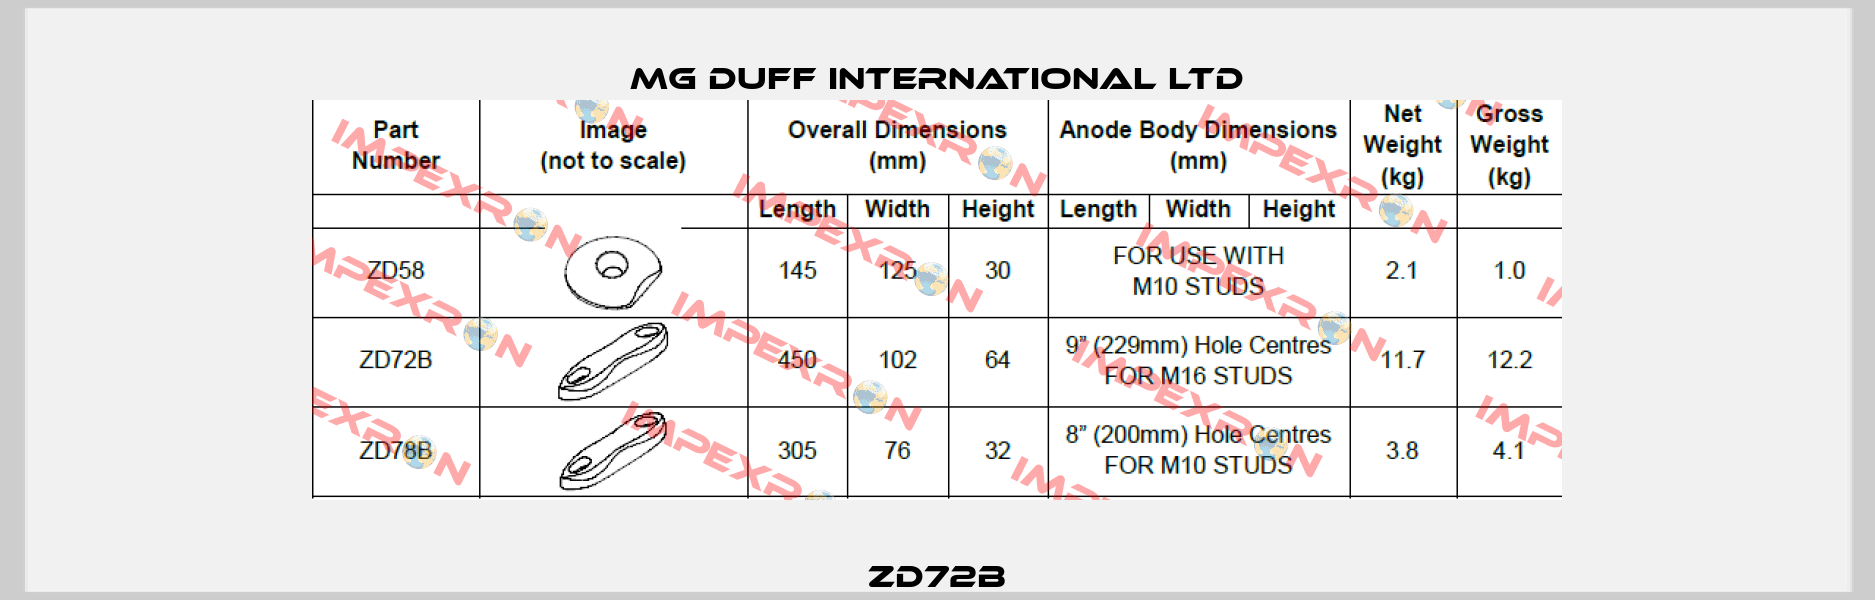 ZD72B MG DUFF INTERNATIONAL LTD